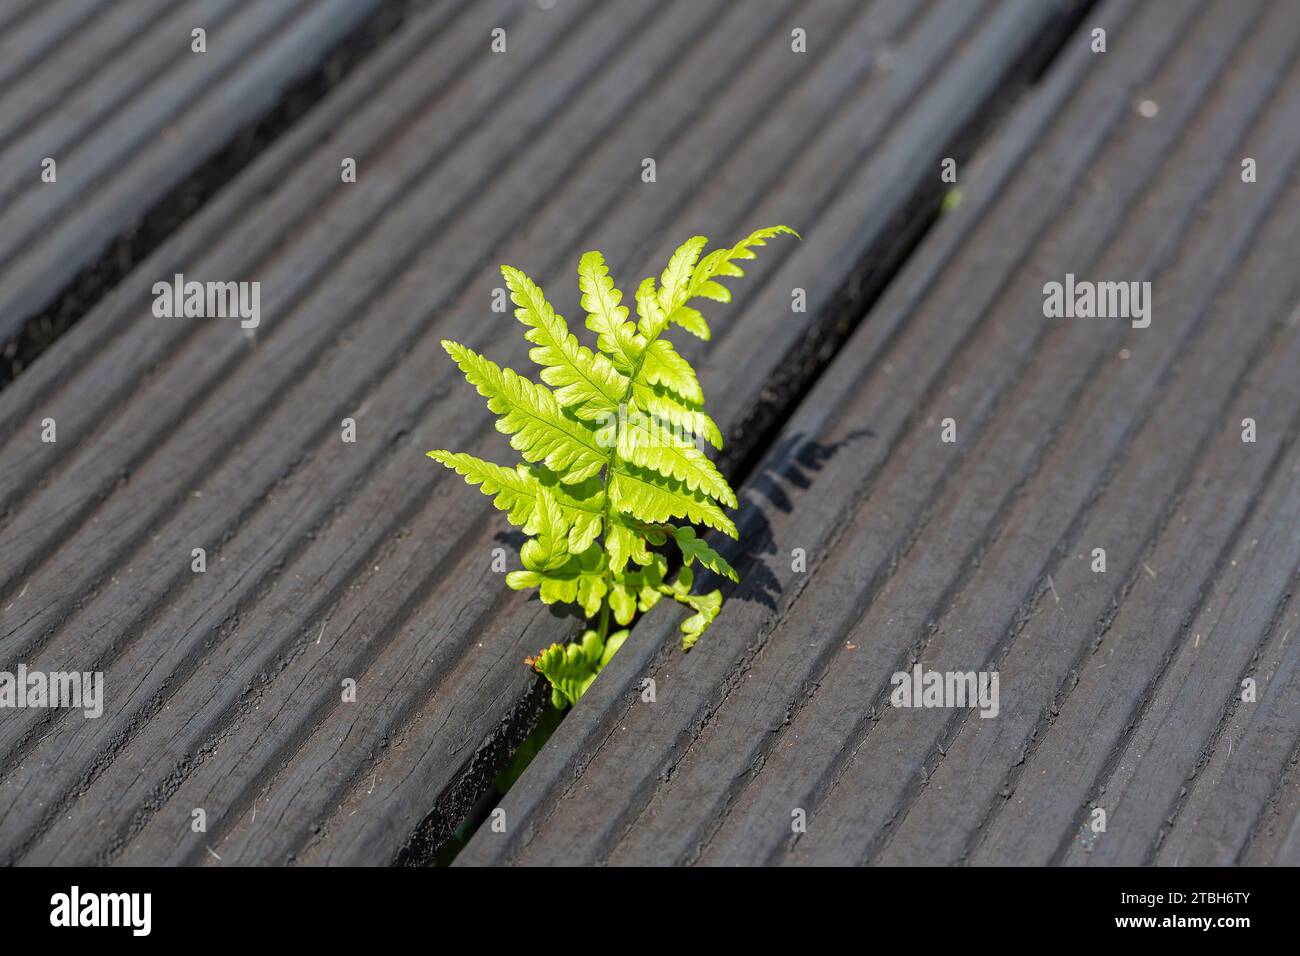 Foglia di felce Comman (Dryopteris felix-mas) che sbircia attraverso le tavole della terrazza Foto Stock